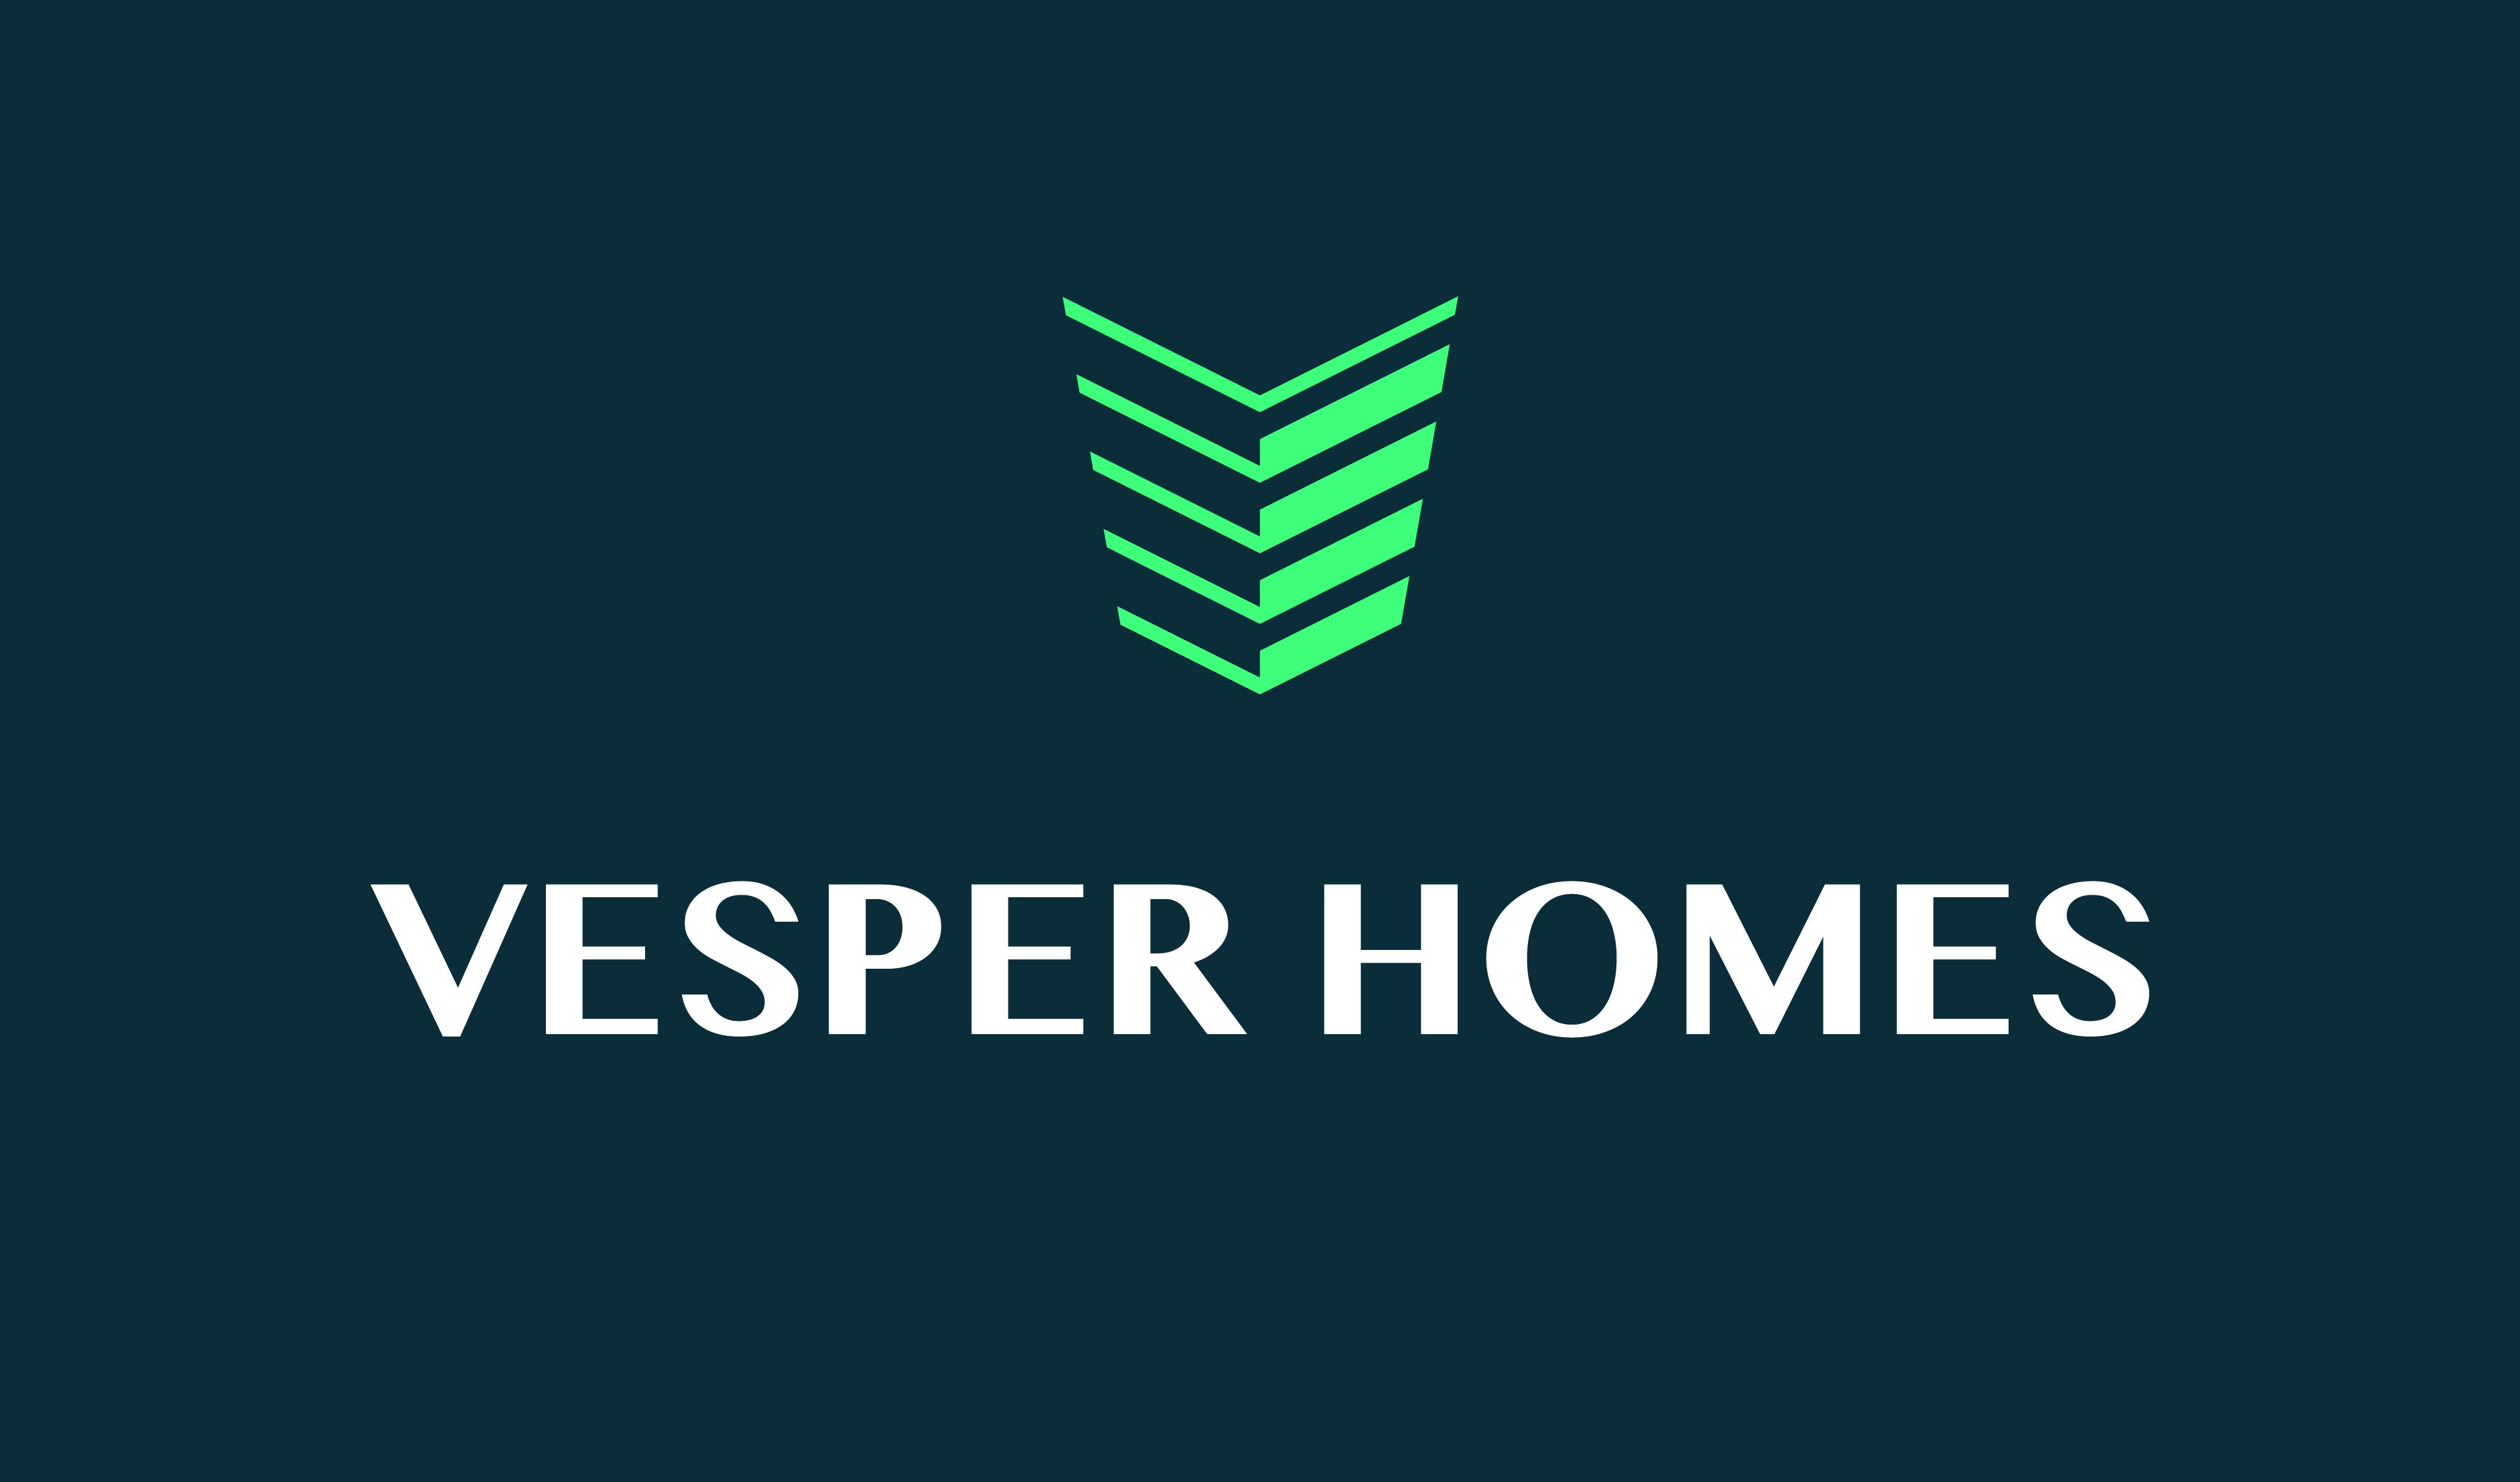 Vesper Homes Pte Ltd